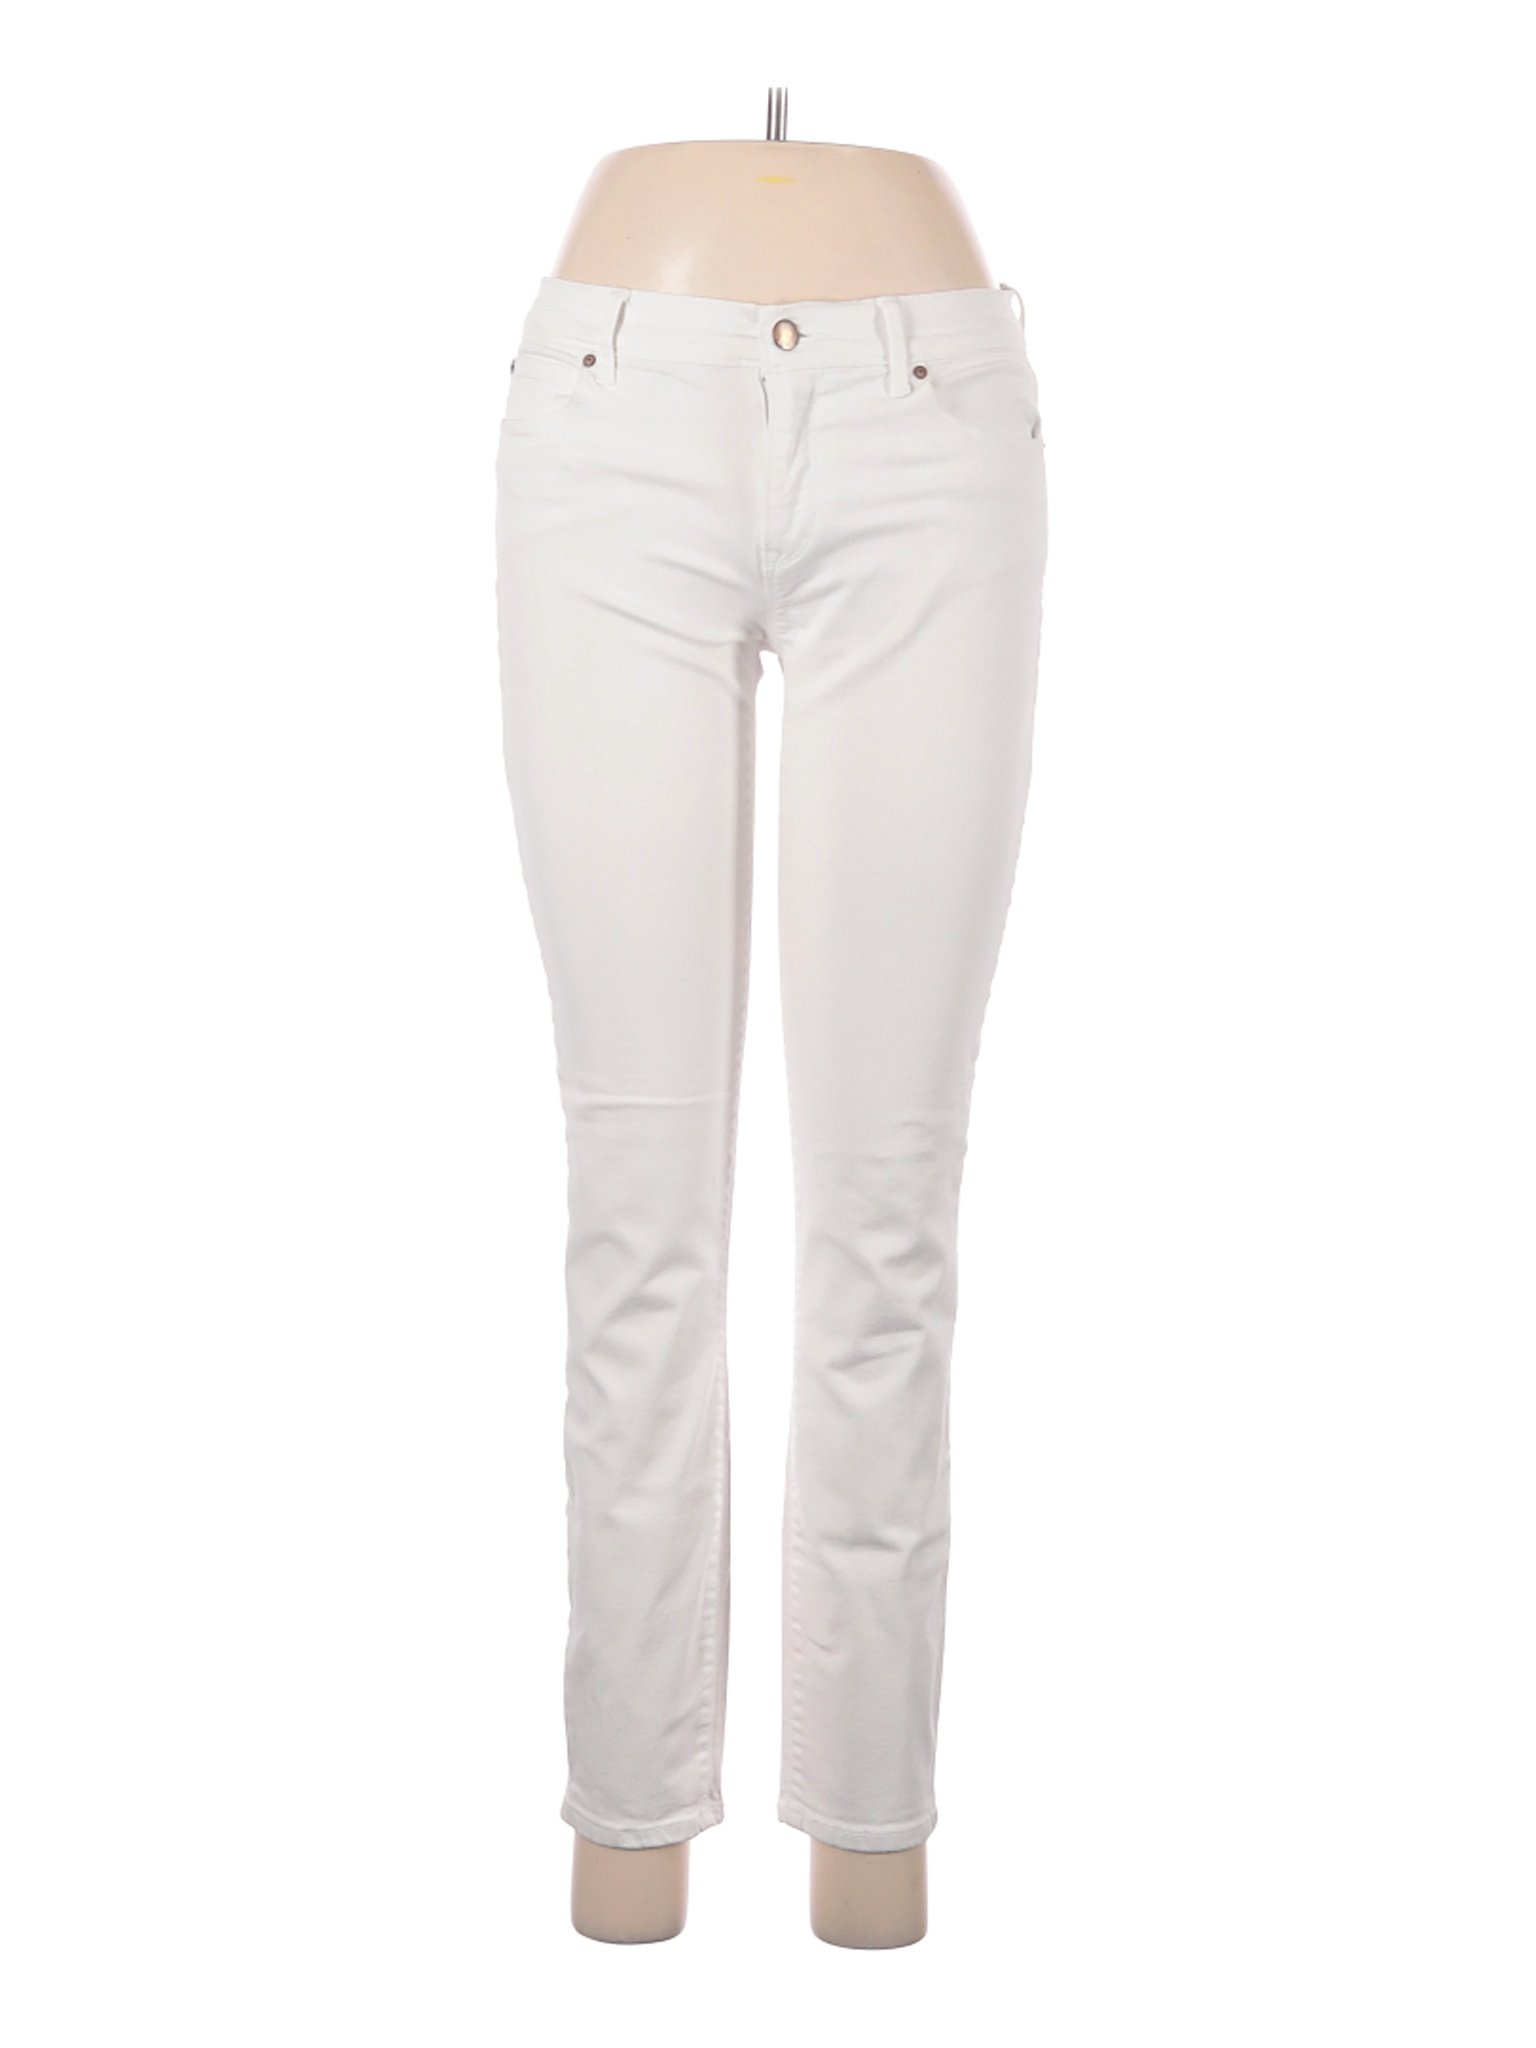 Gap Women White Jeans 27W | eBay